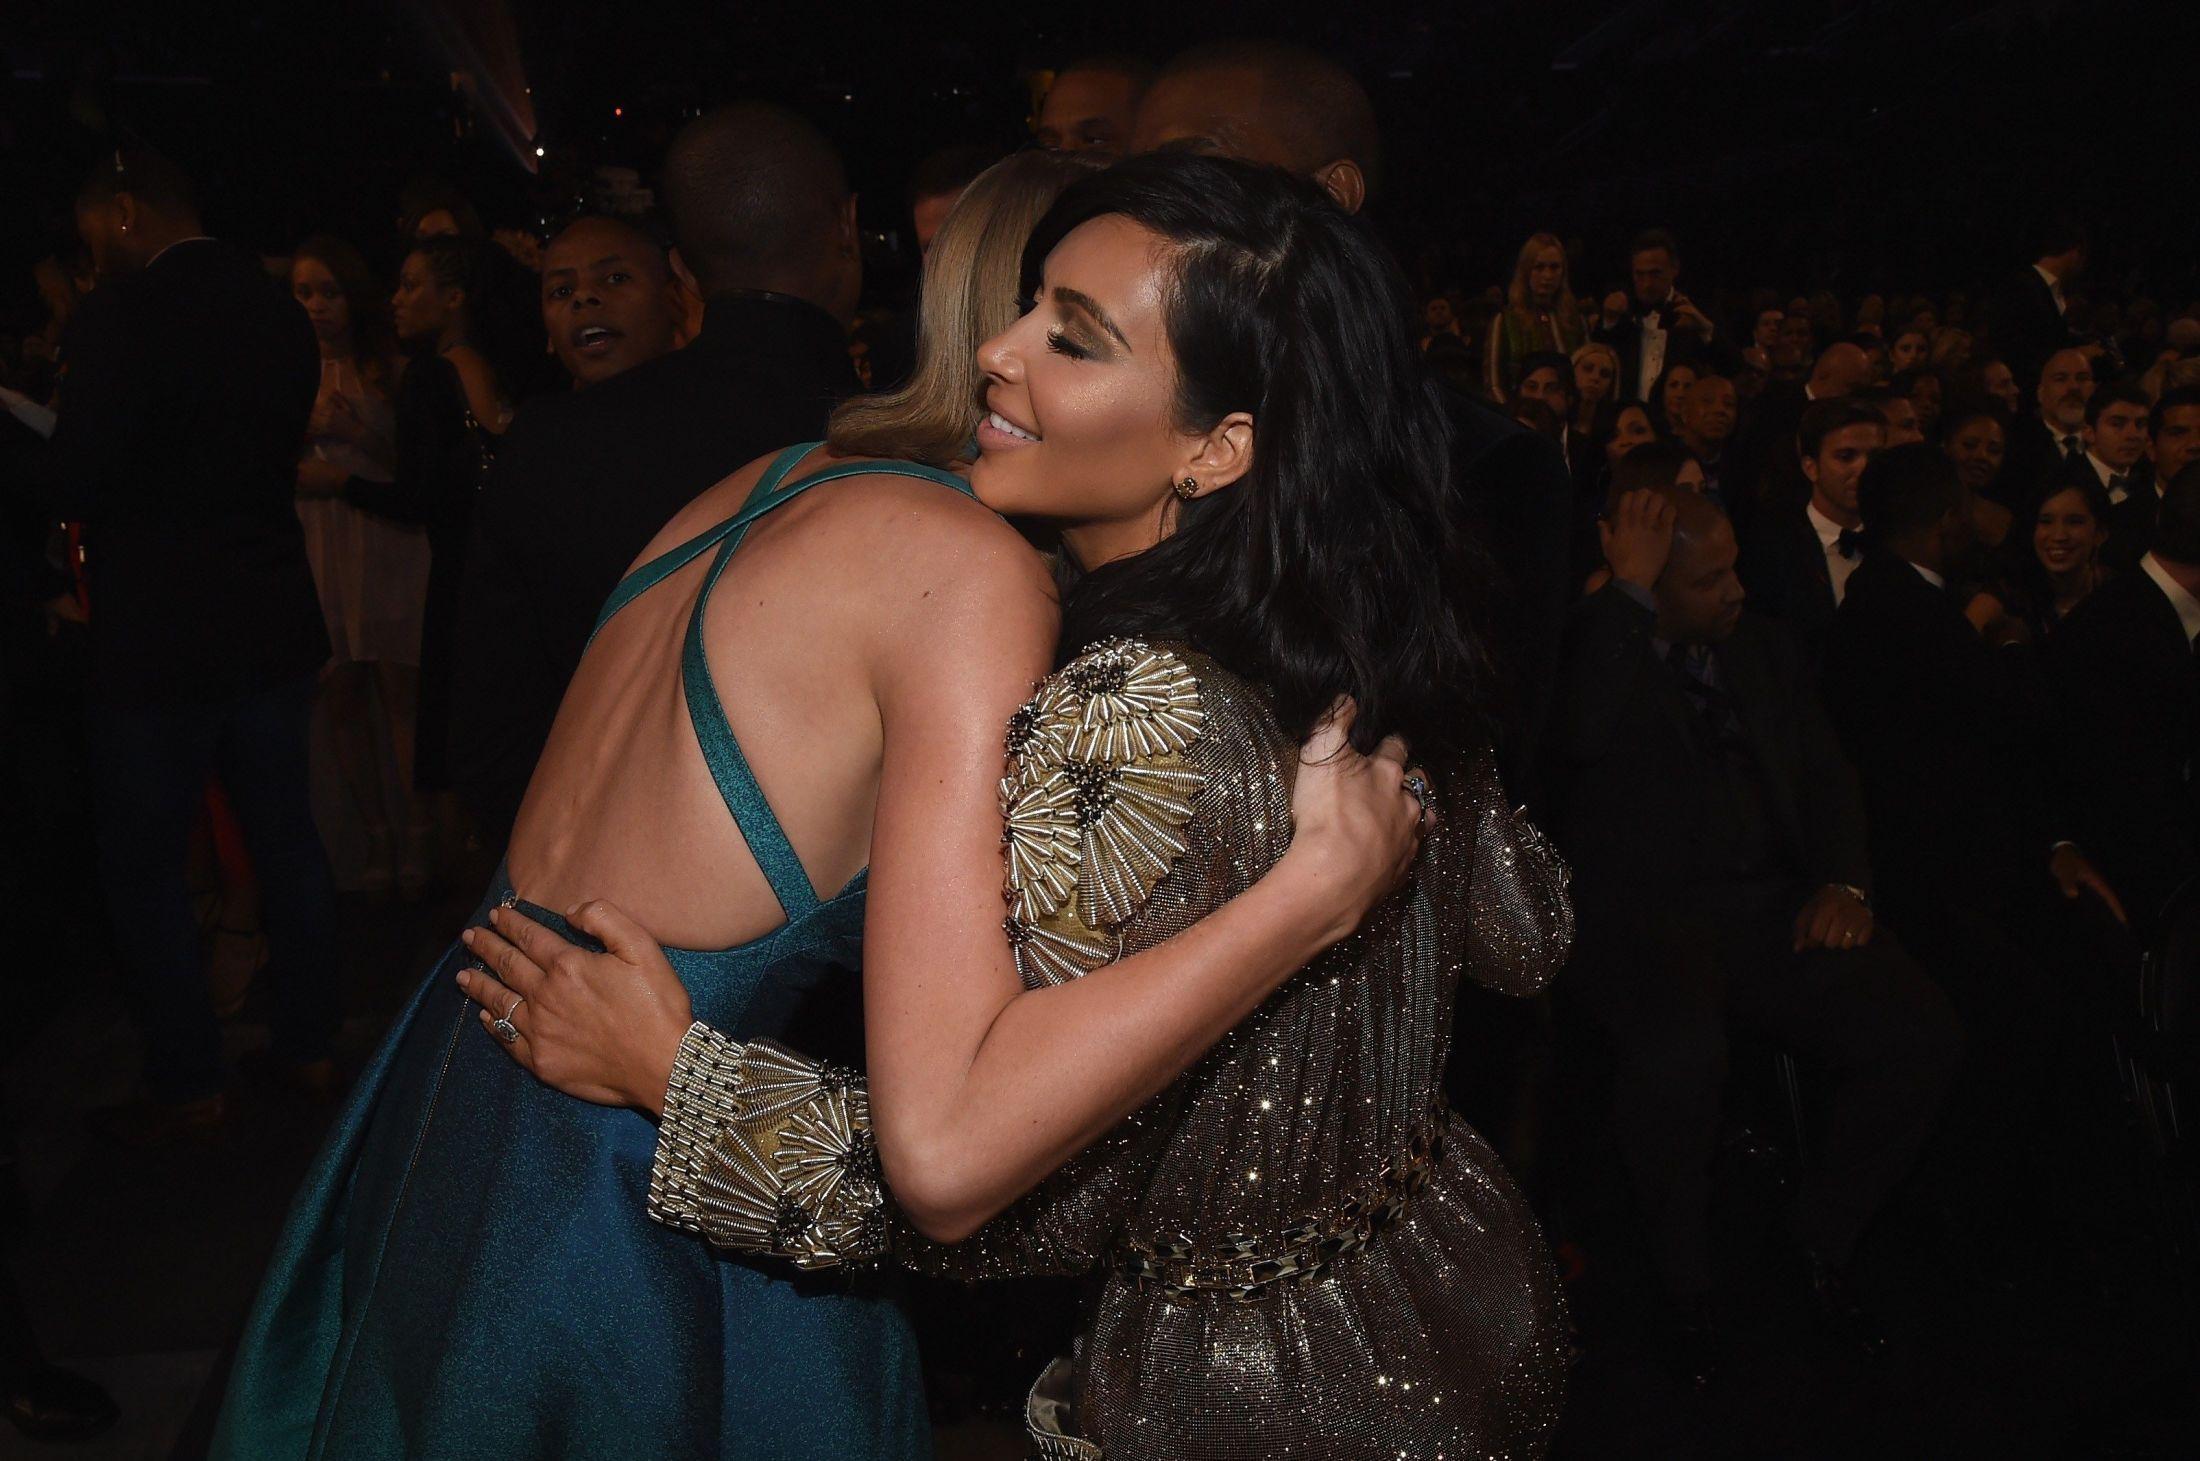 BEGRAVET STRIDSØKSEN: Taylor Swift og Kim Kardashian West som klemmer under Grammy Awards i 2015. Foto: Larry Busacca/AFP